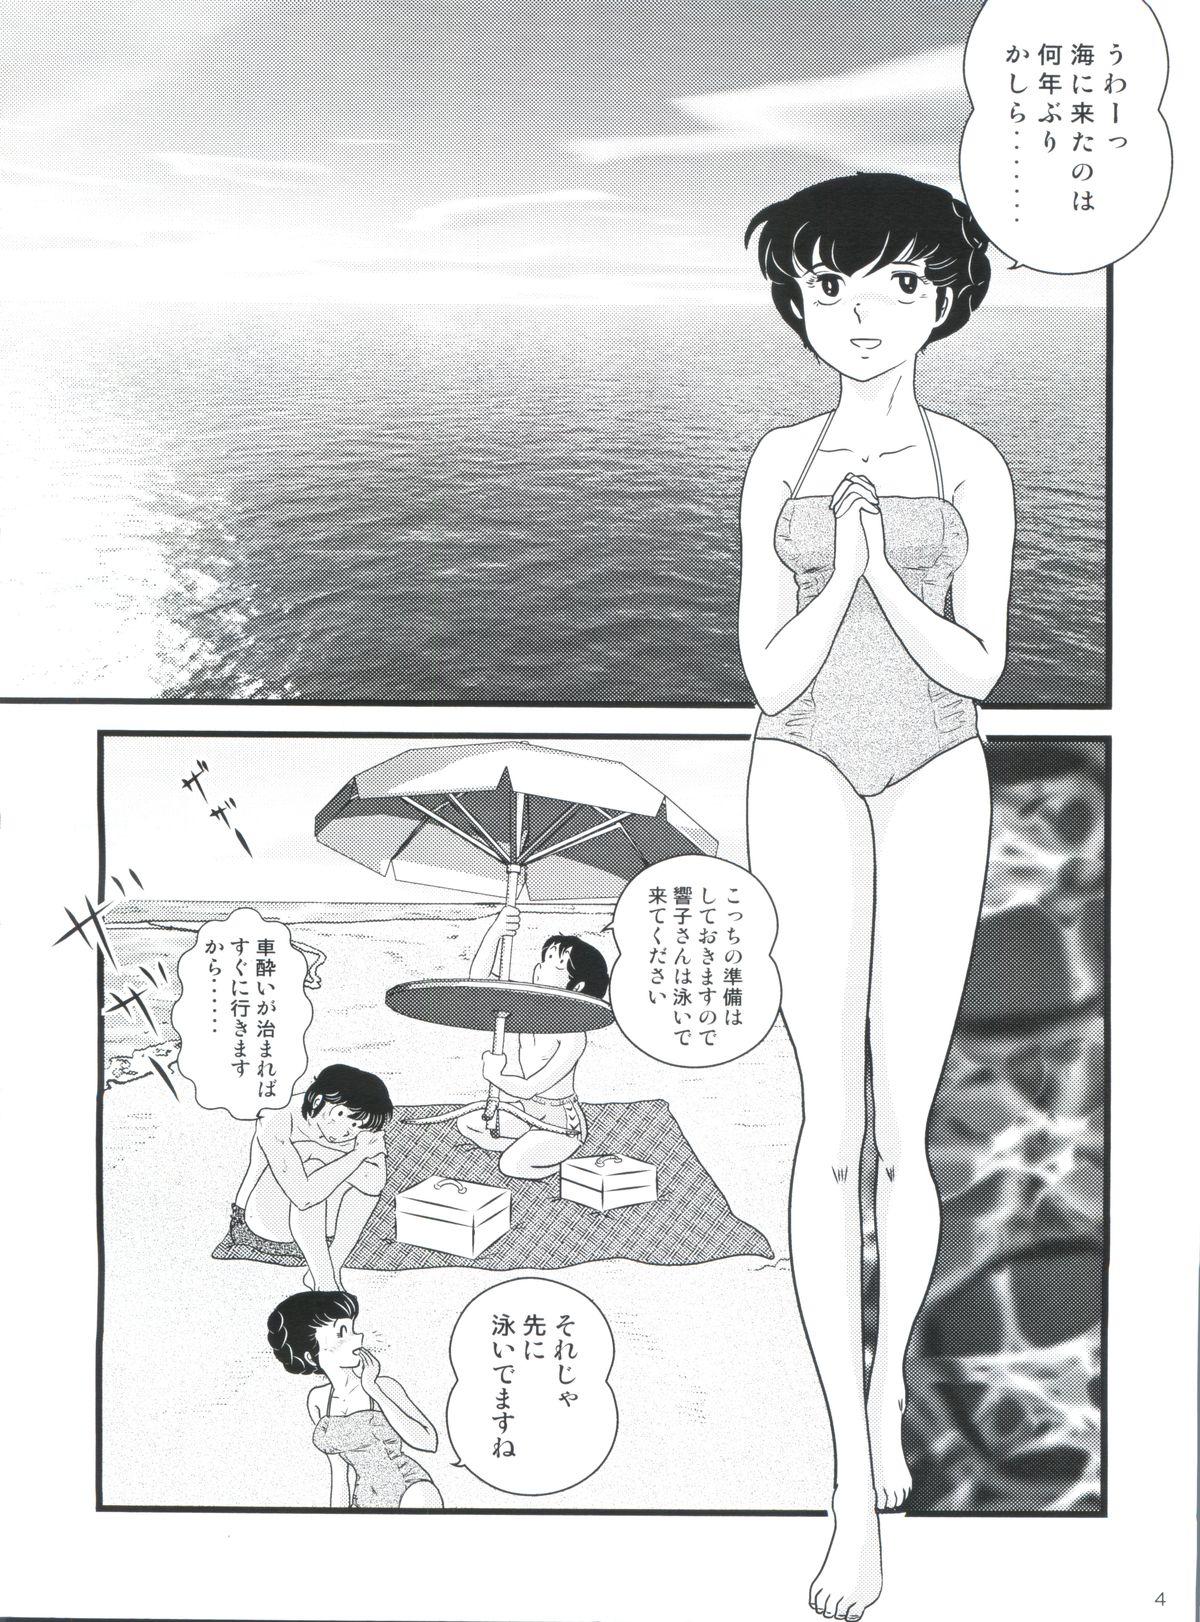 Gaygroup Fairy 11 - Maison ikkoku Safada - Page 8